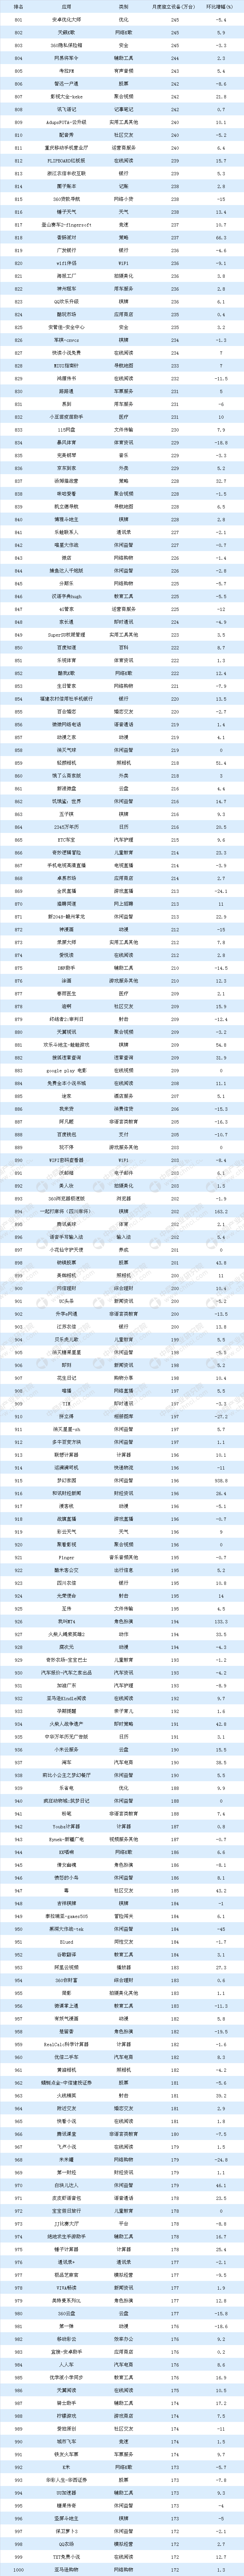 2018年8月中国移动应用APP排行榜TOP1000